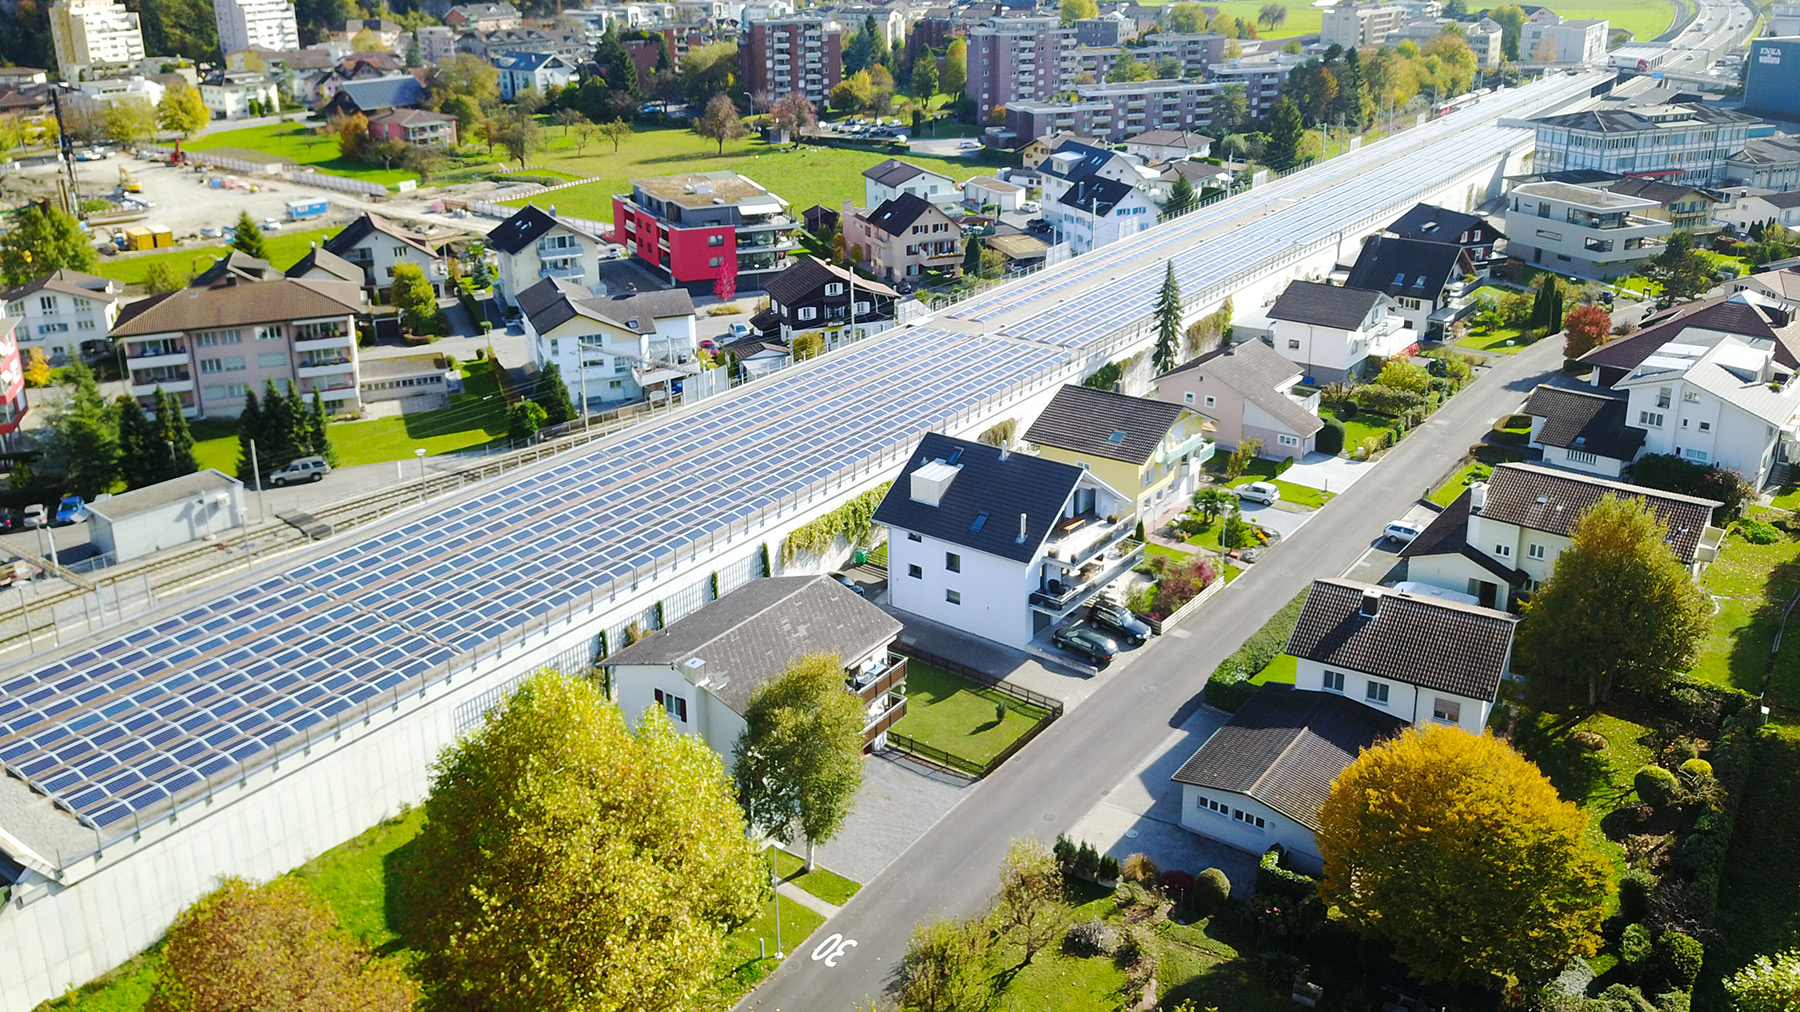 Autobahnüberdachung von Stansstad | © Plan E AG